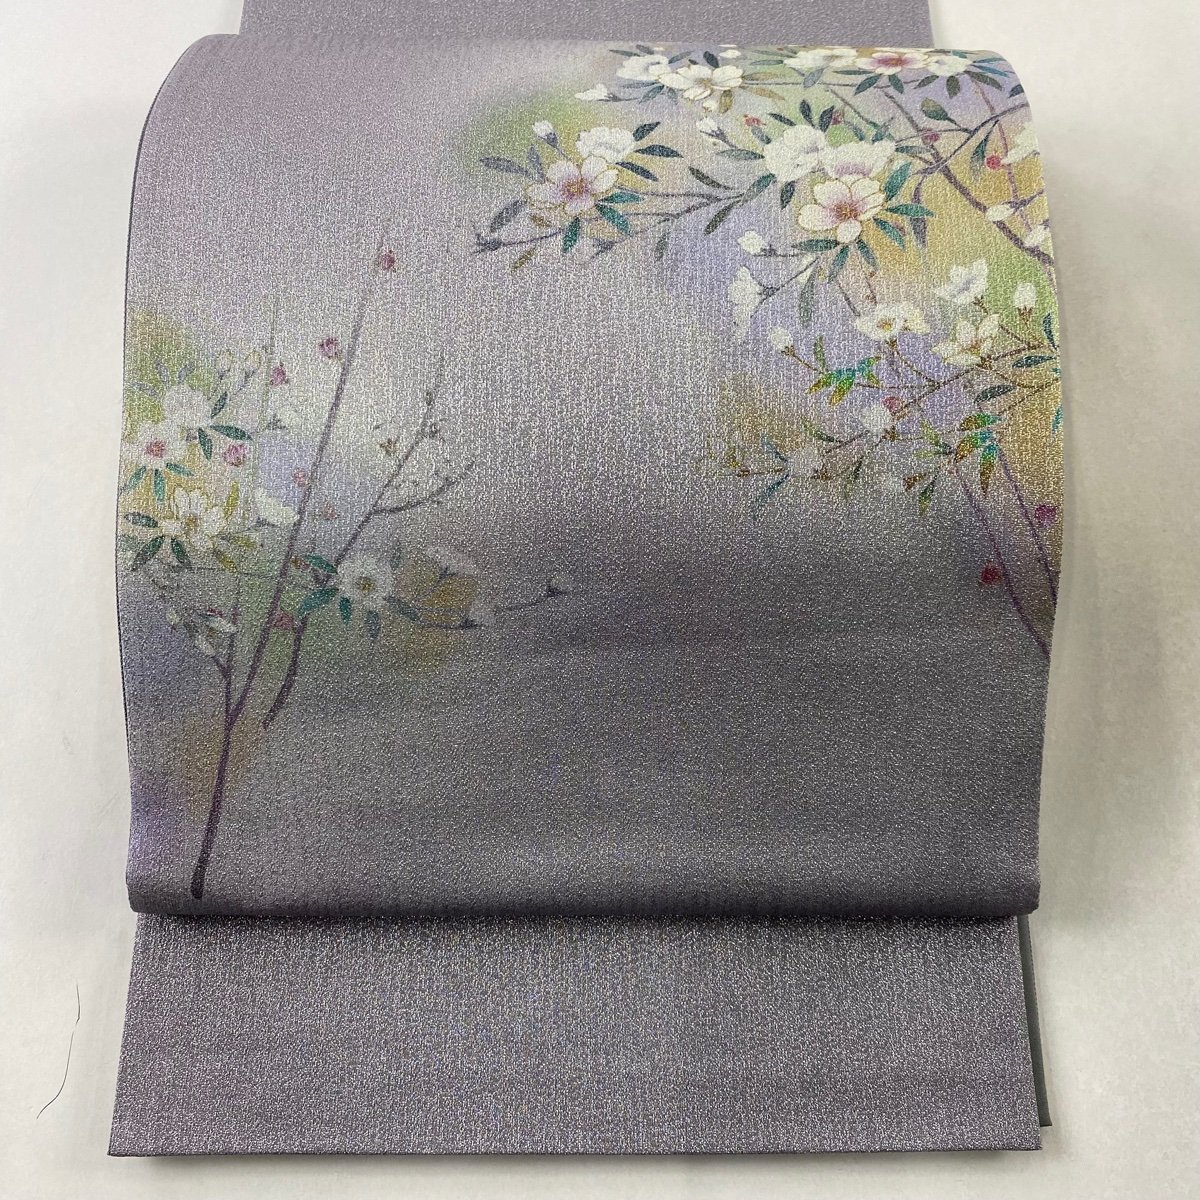 ファッションなデザイン 美品 袋帯 秀品 【中古】 正絹 お太鼓柄 薄紫 銀通し 桜 仕立て上がり